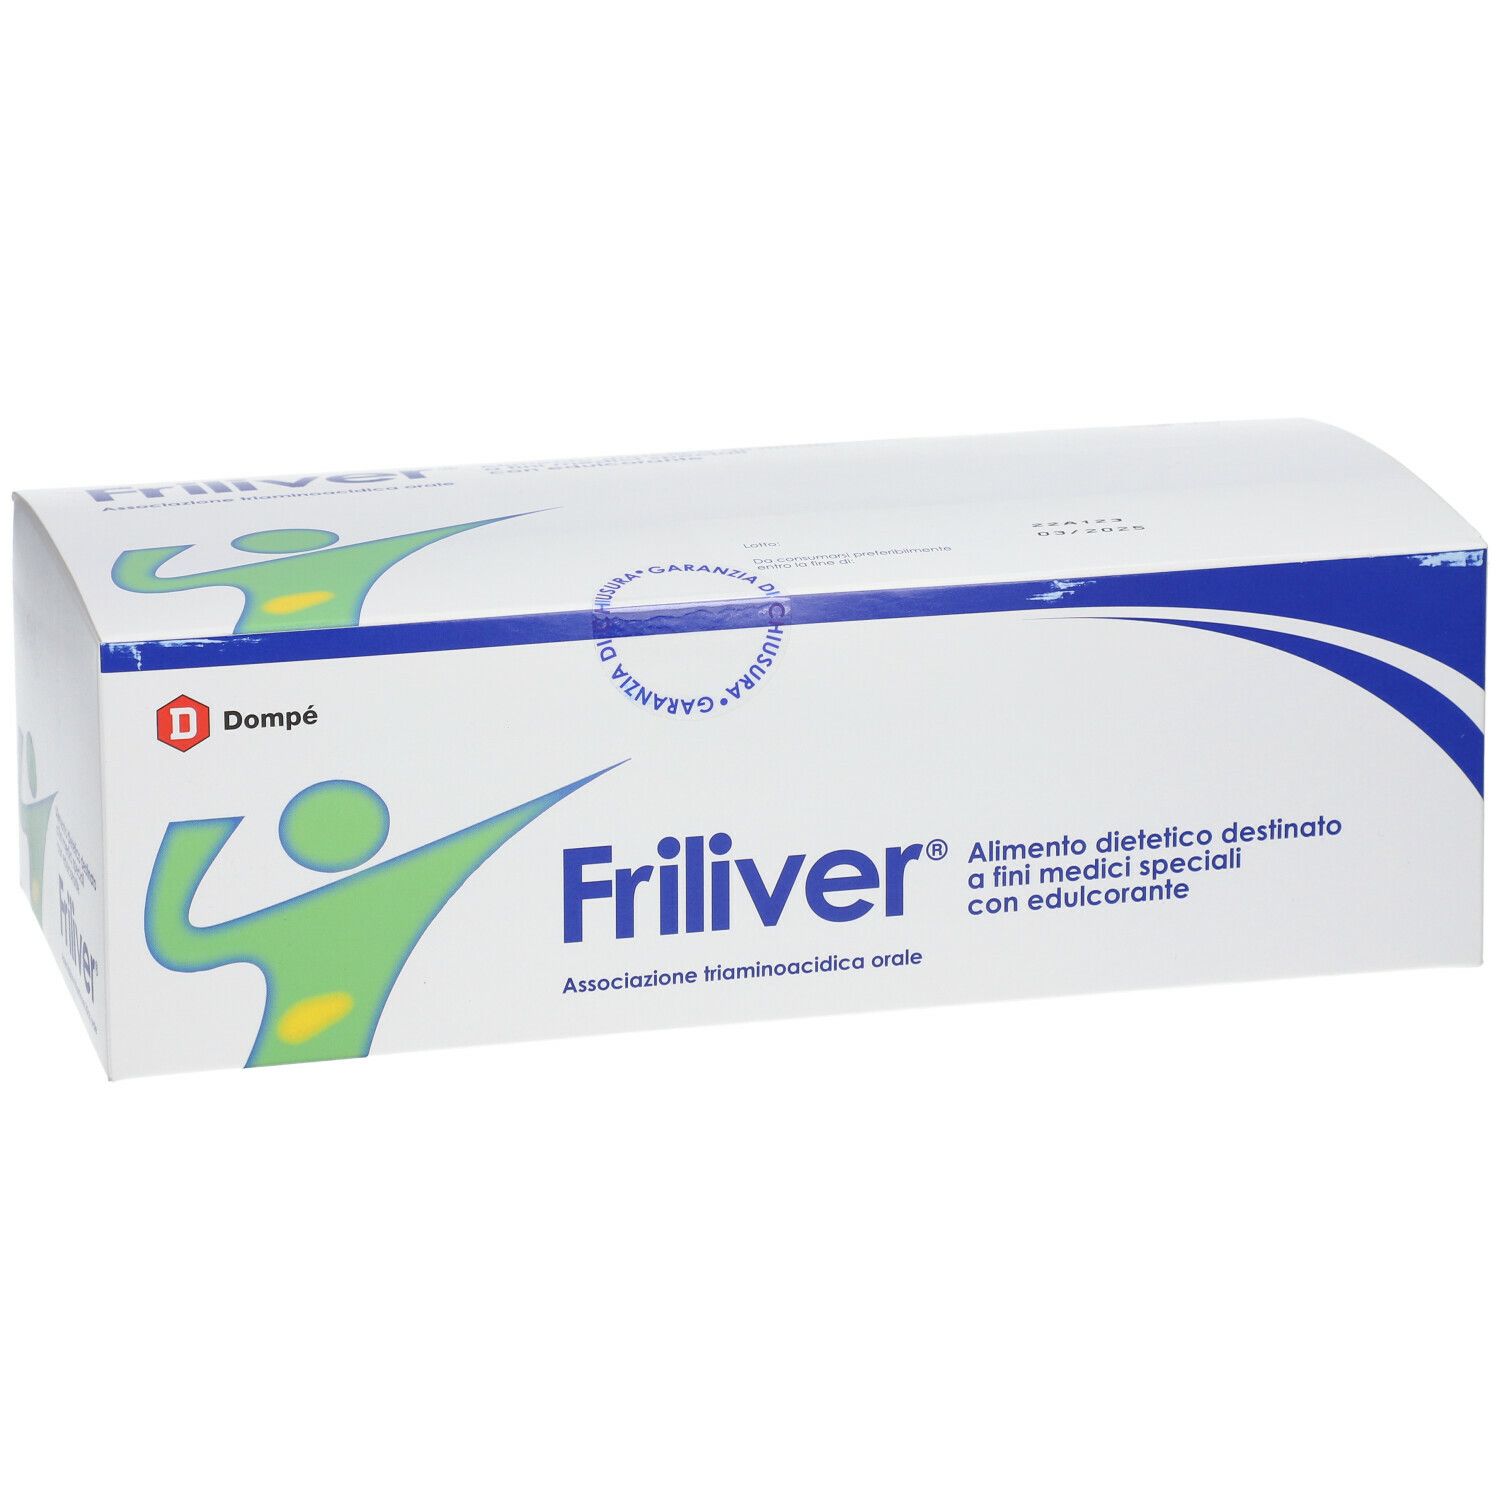 Friliver®